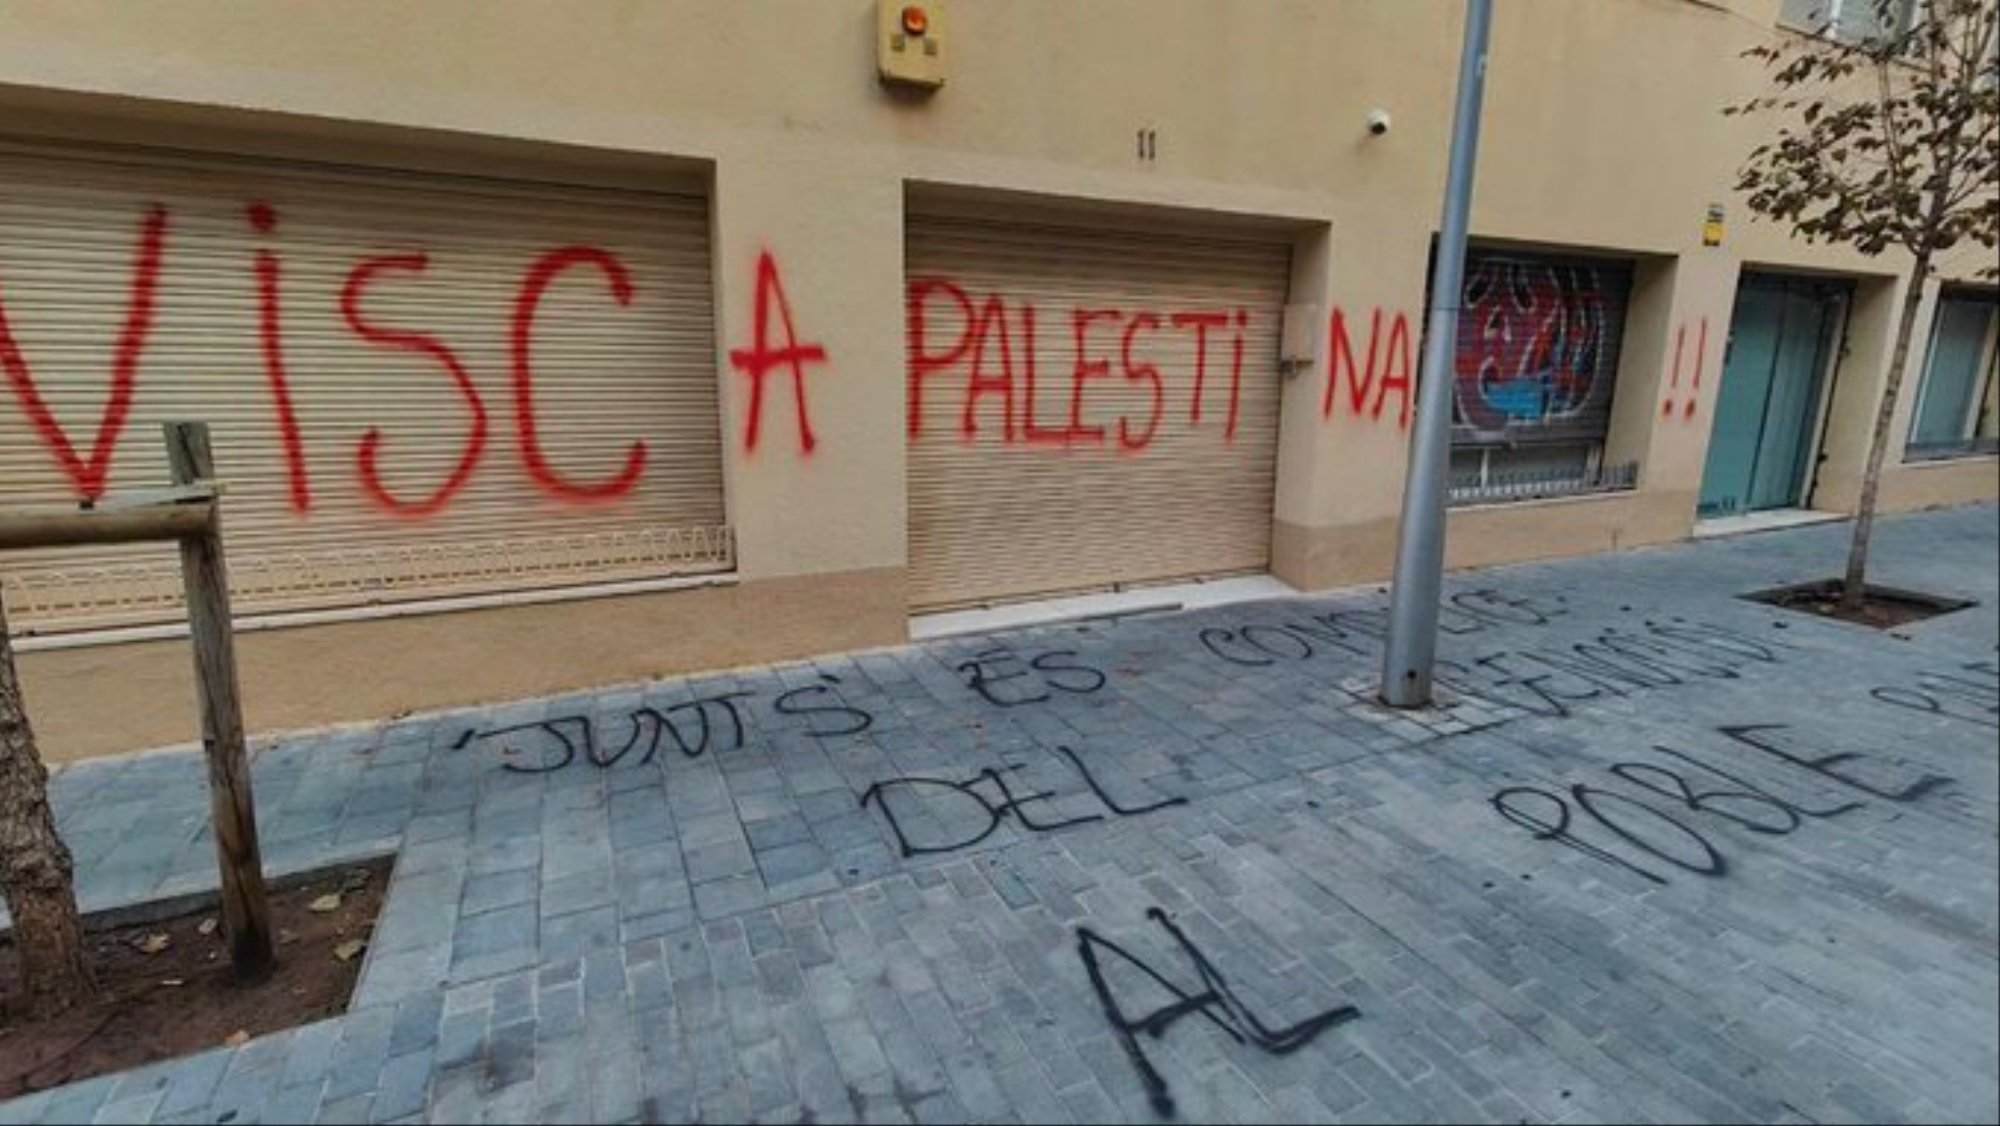 La seu de Junts per Catalunya es desperta amb pintades a favor de Palestina